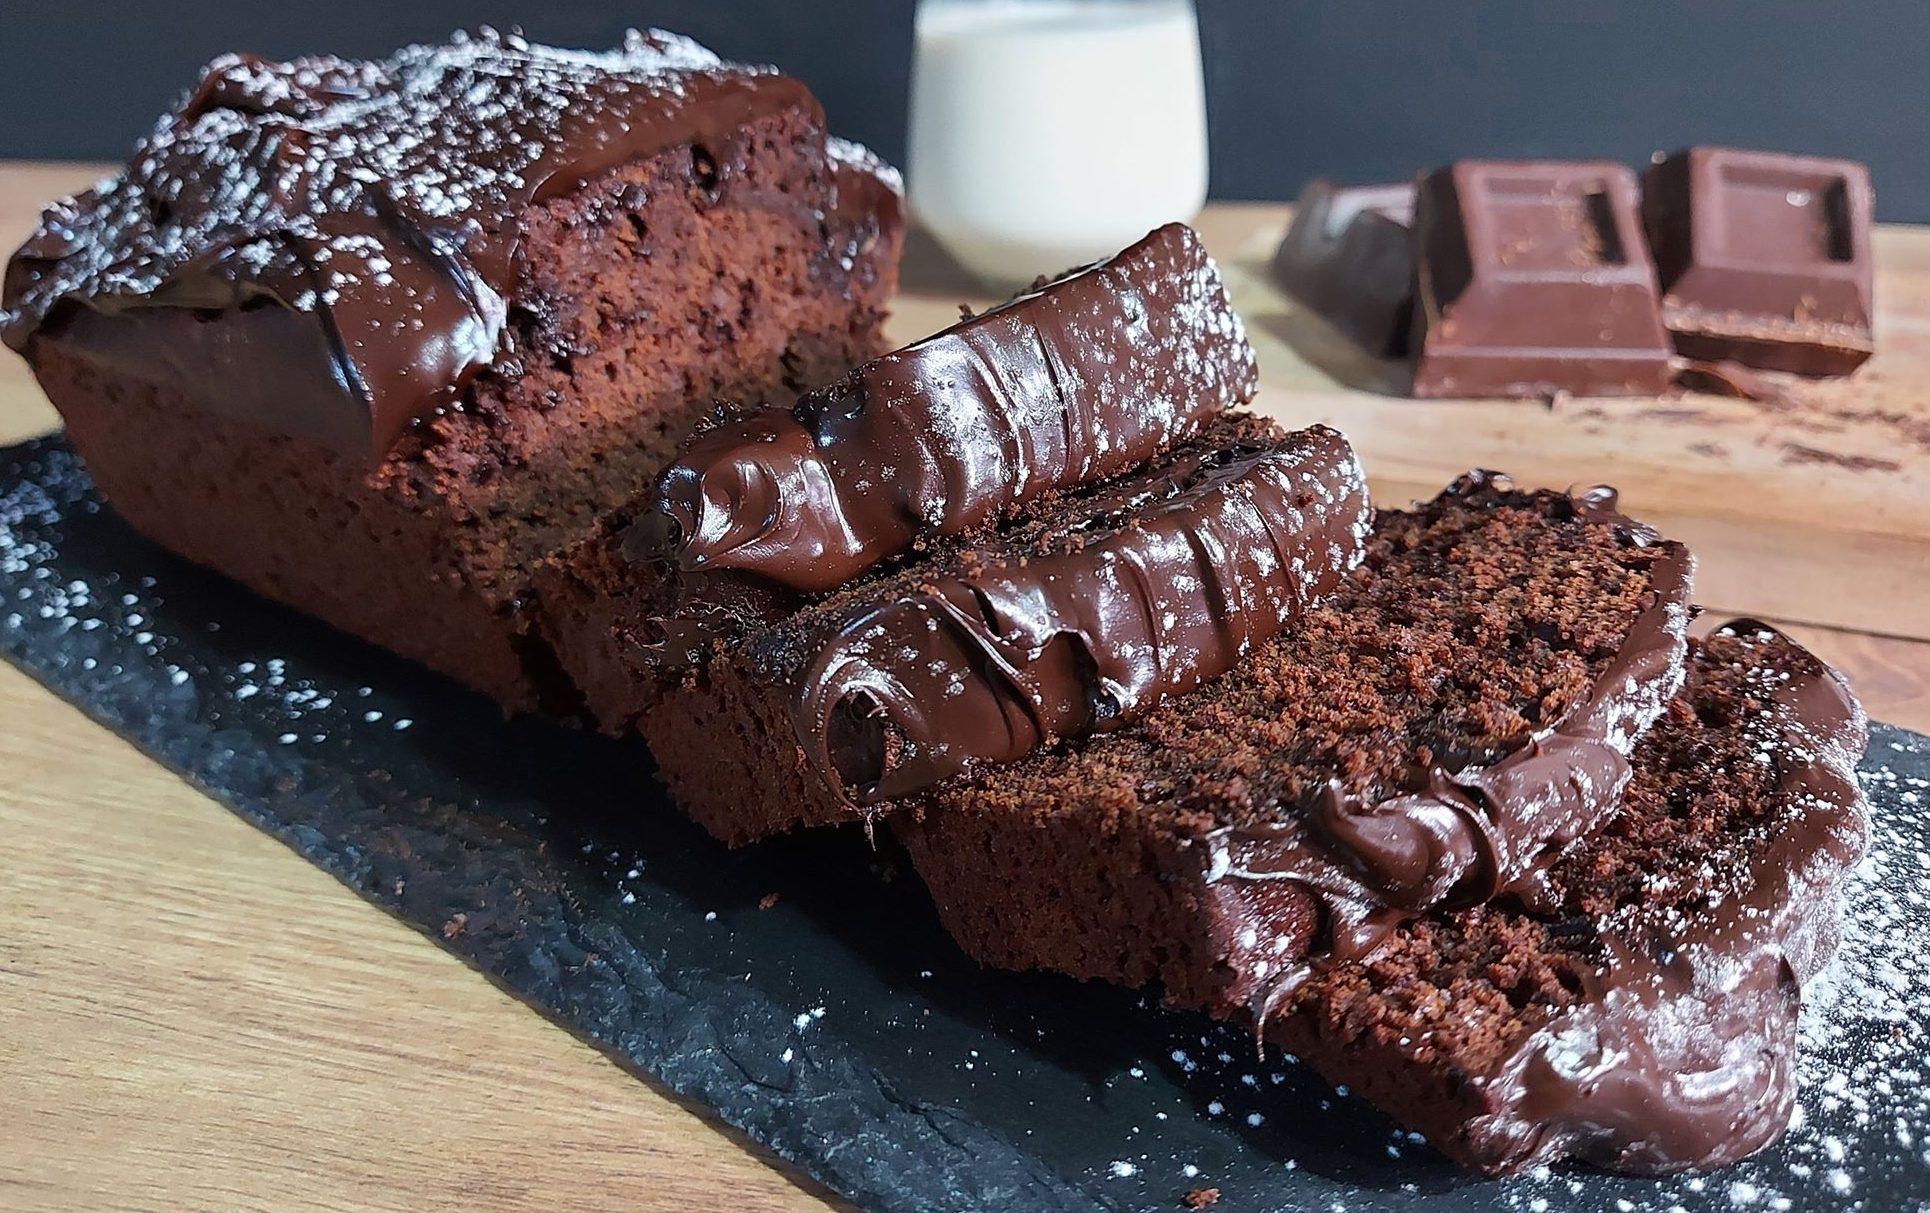 Νηστίσιμο σοκολατένιο κέικ με 3 υλικά- Ιδανικό και για vegans!